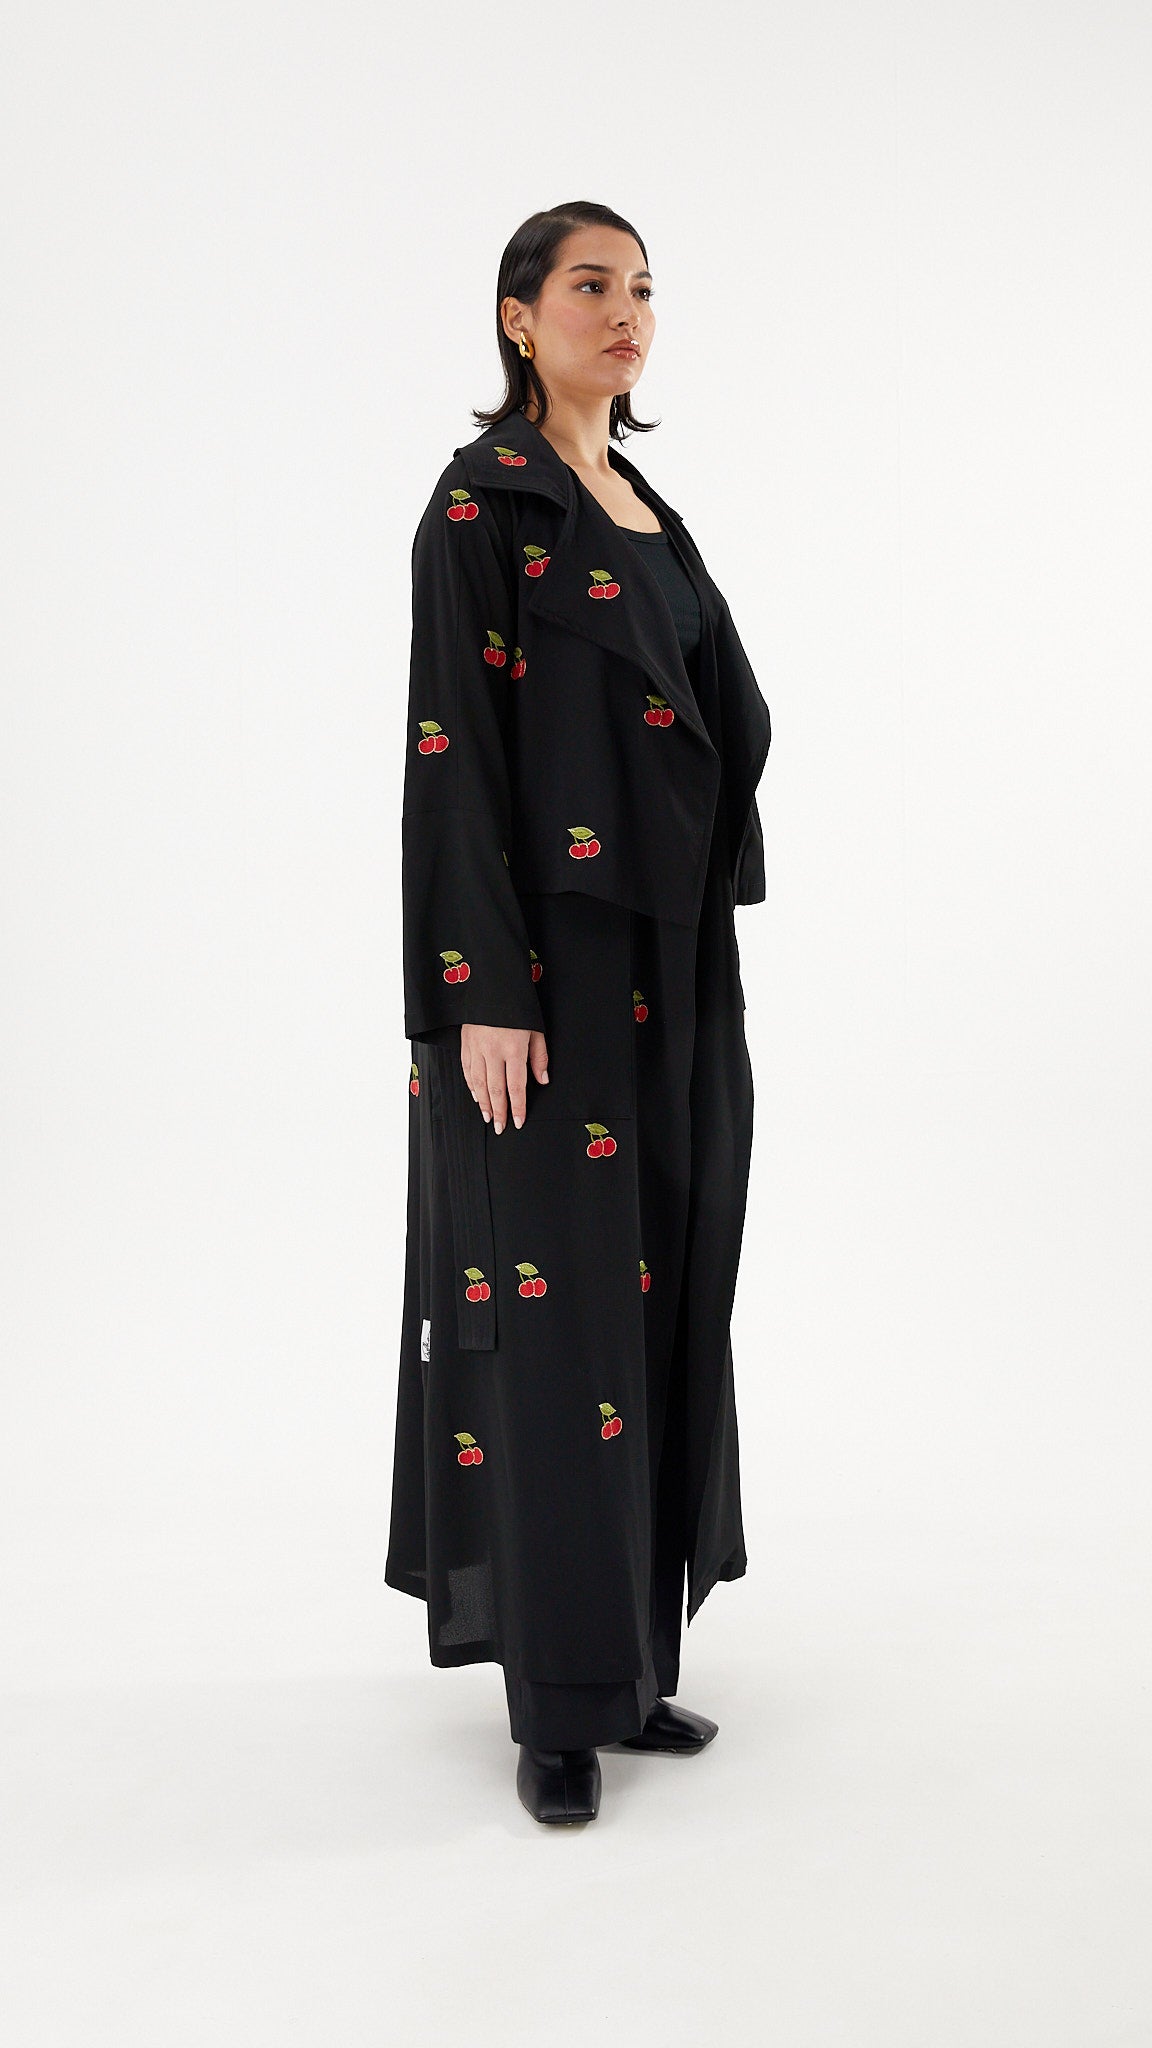 Cherry Trench Coat Abaya